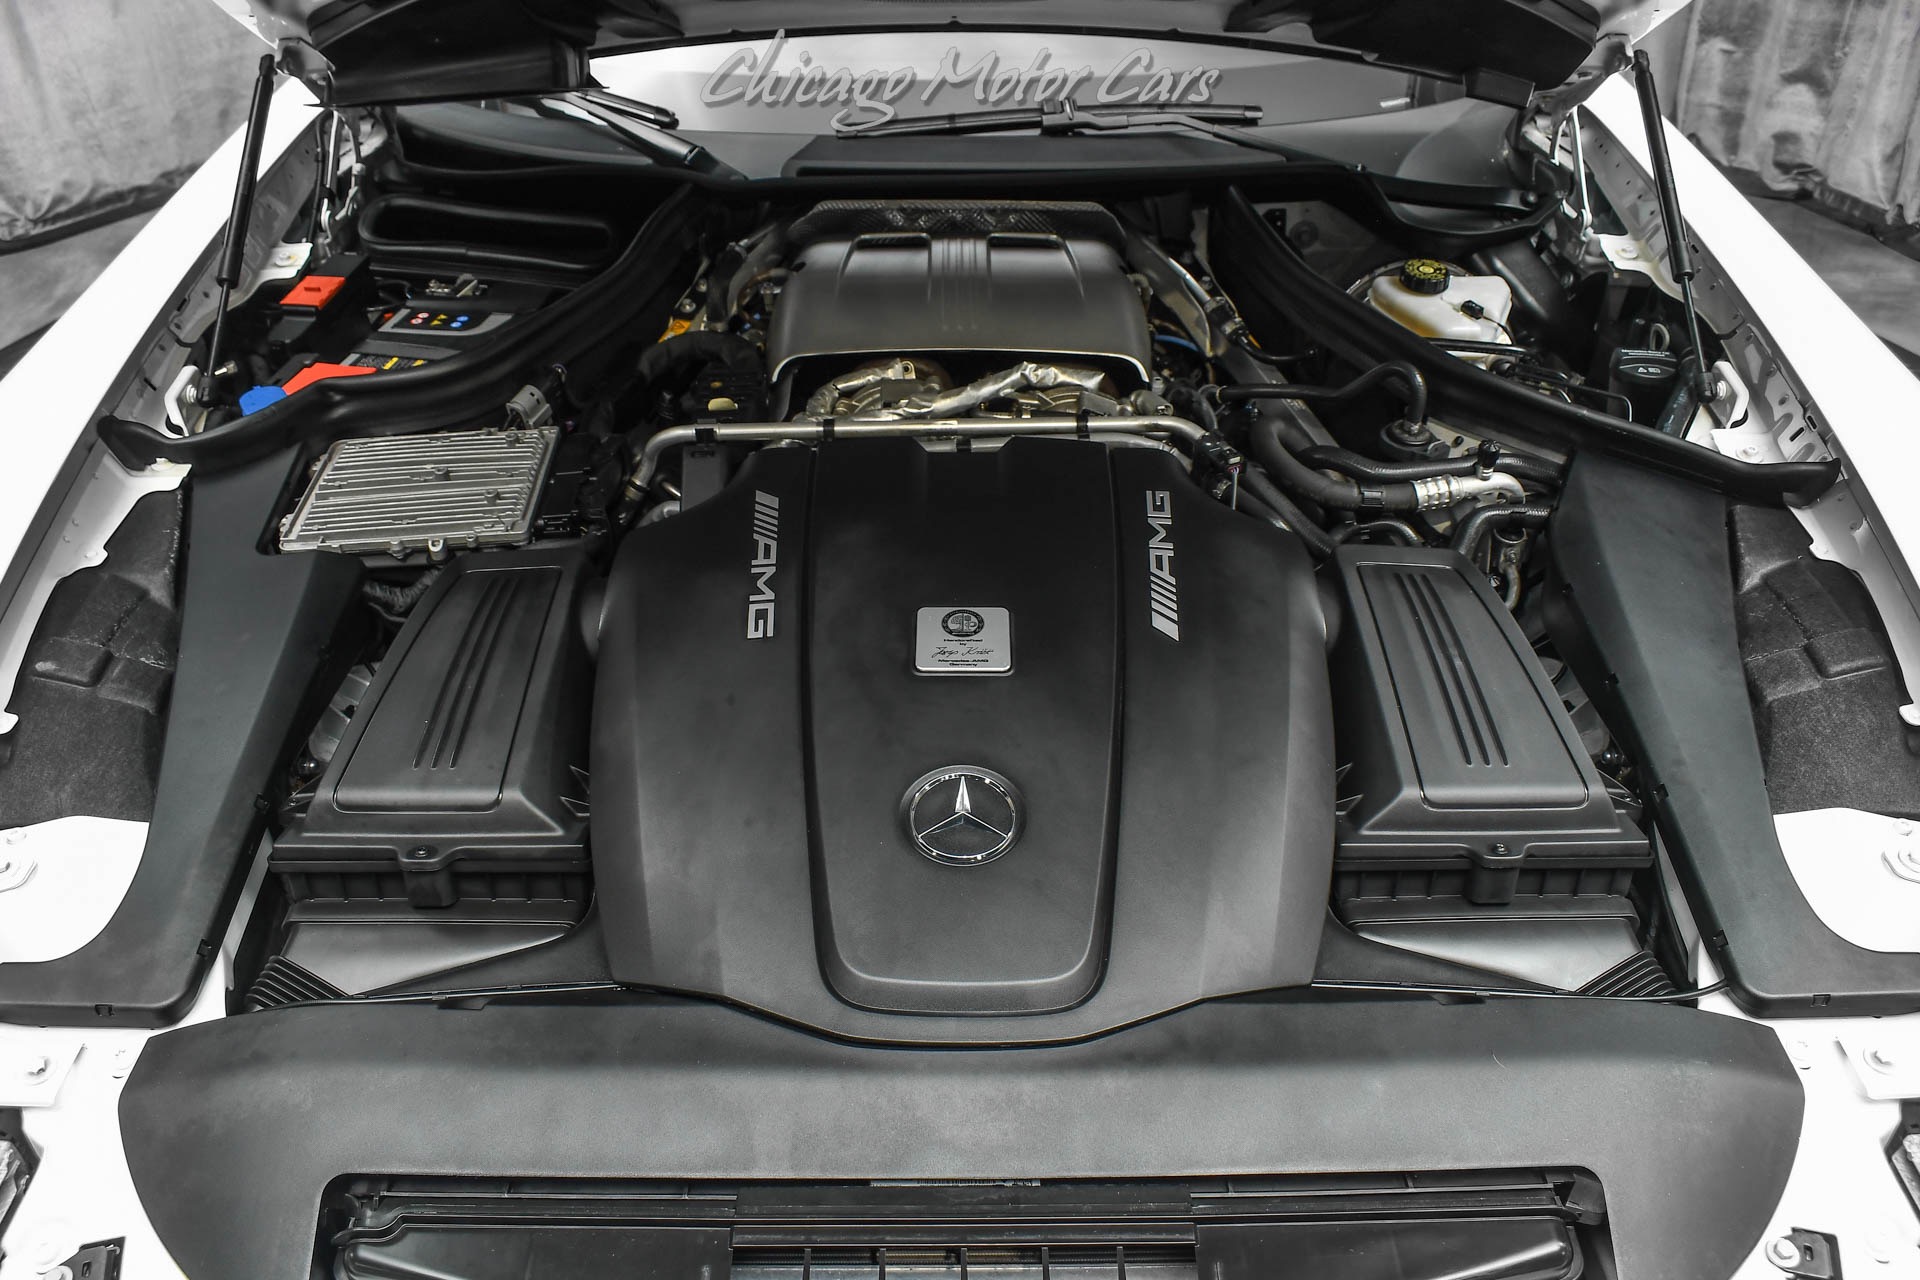 Used-2019-Mercedes-Benz-AMG-GT-C-Roadster-ONLY-14k-Miles-Carbon-Fiber-Trim-MSRP-167K-GORGEOUS-Spec